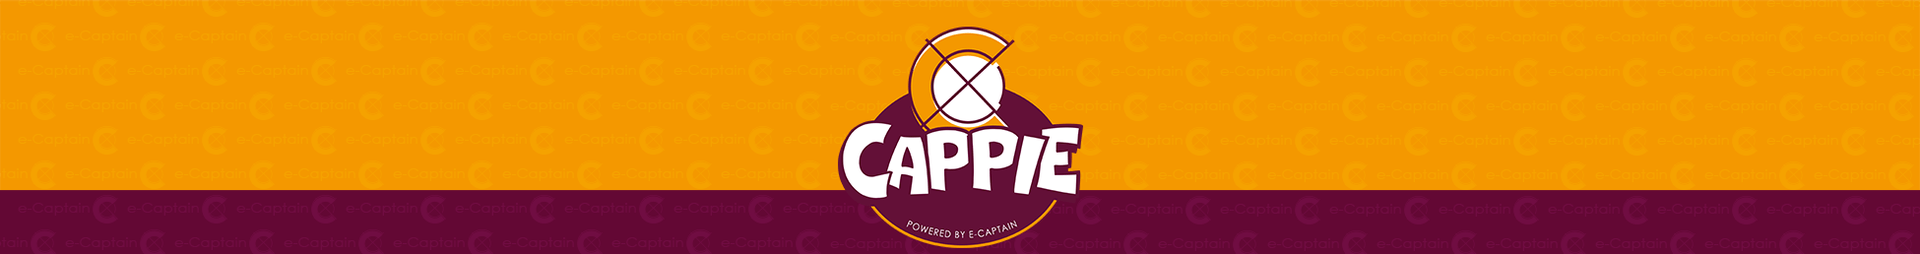 cappie-header-v1